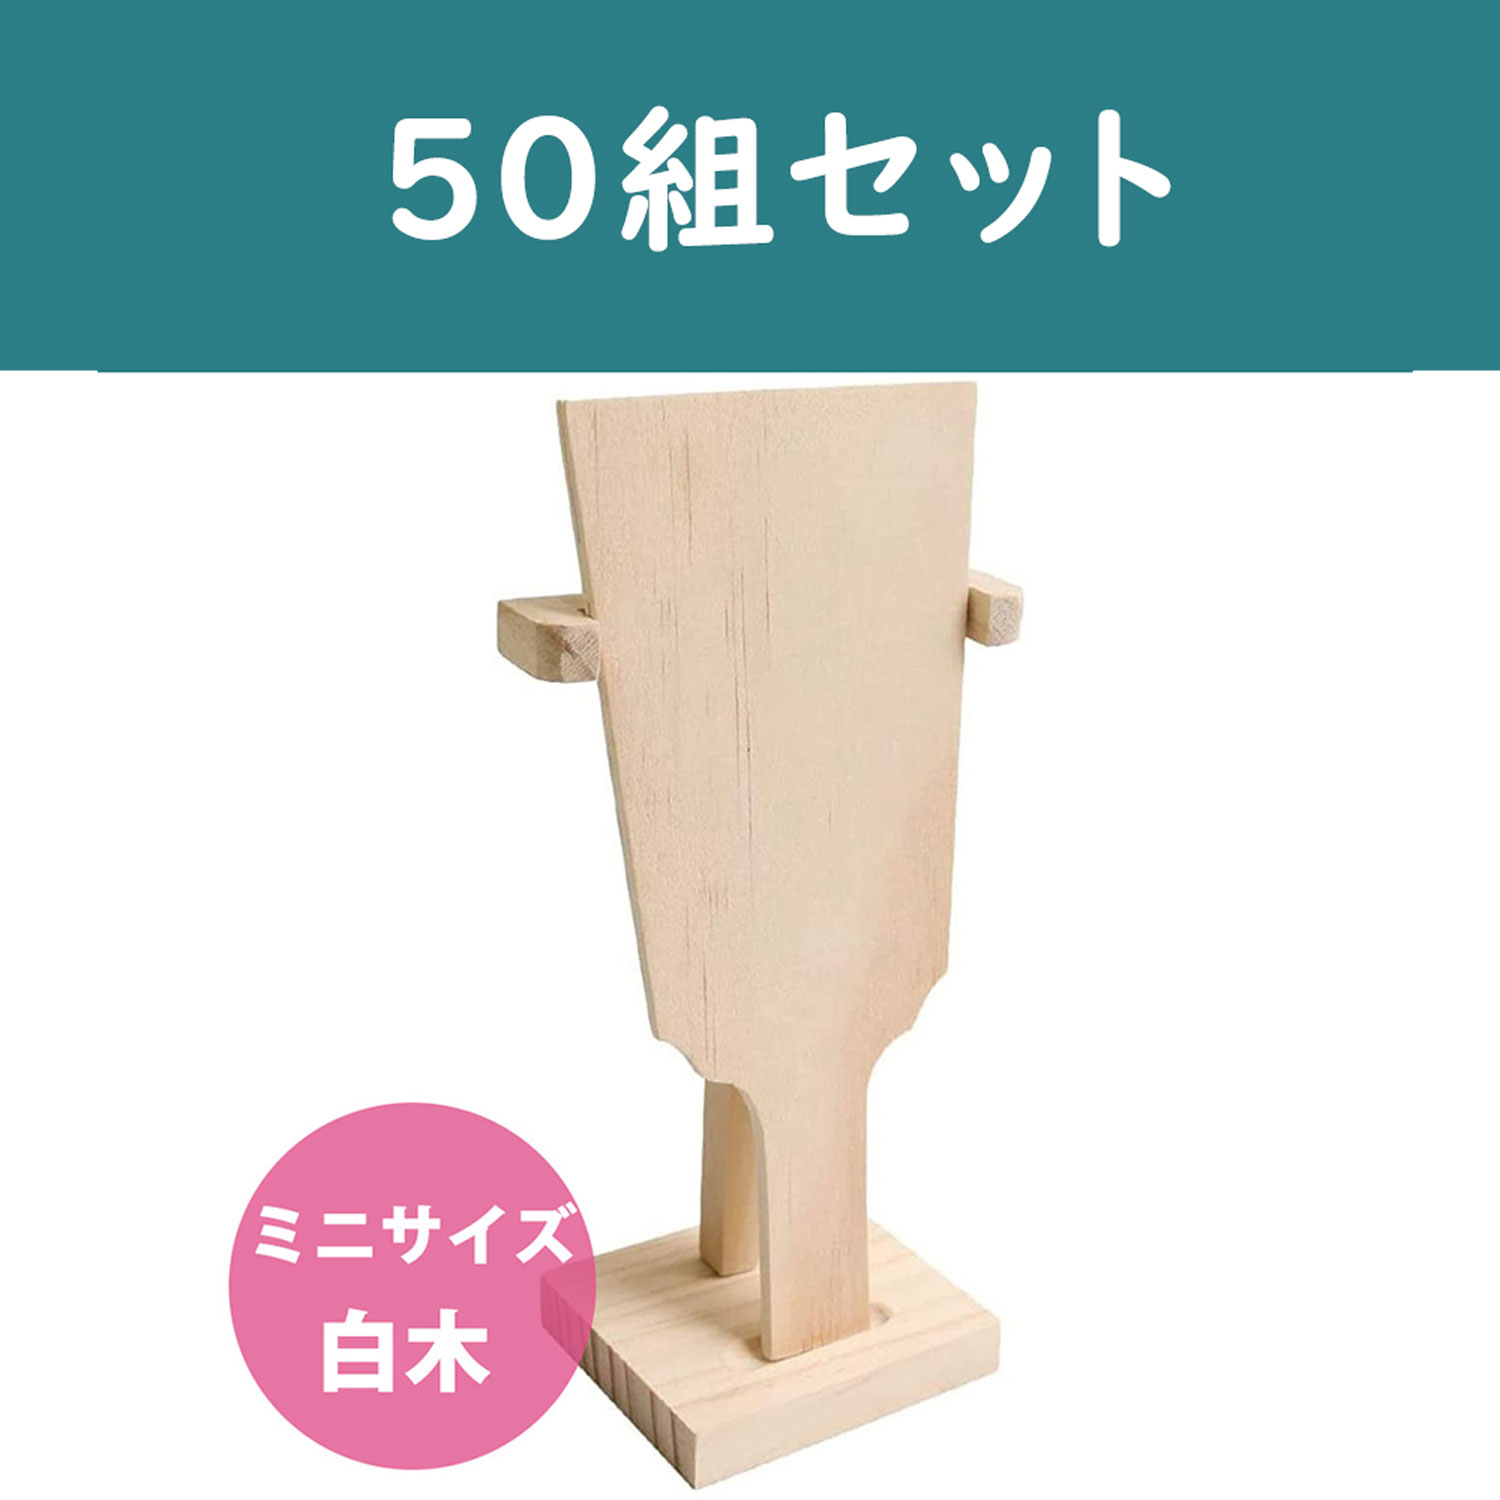 【第二弾】CC1290-50 ミニ羽子板 白木 50組 (セット)